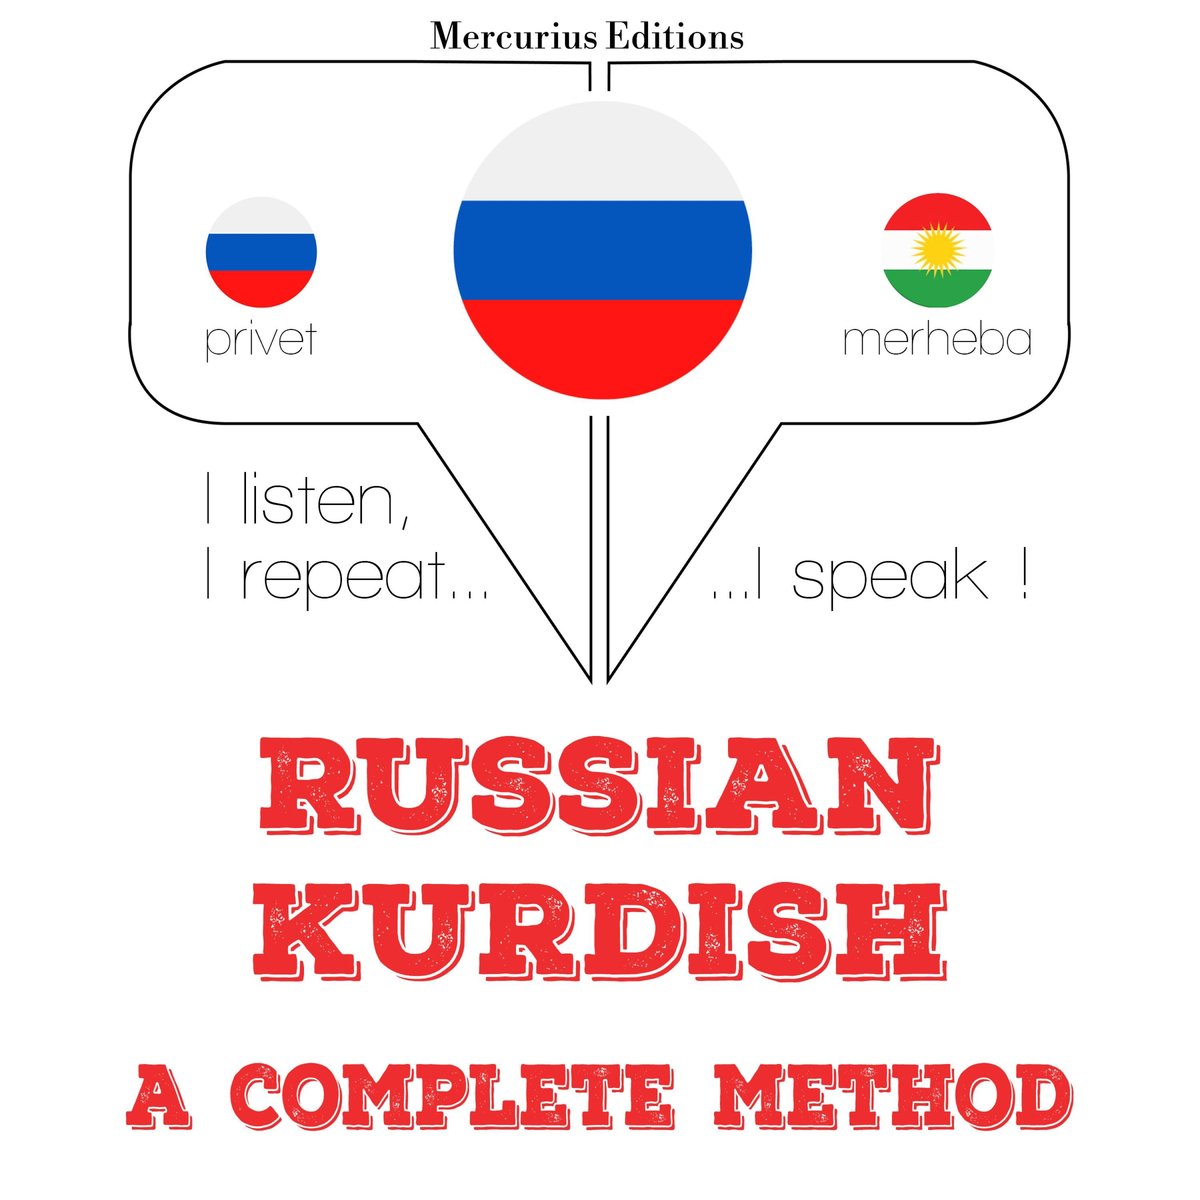 Русский - курдская: полный метод - Jm Gardner